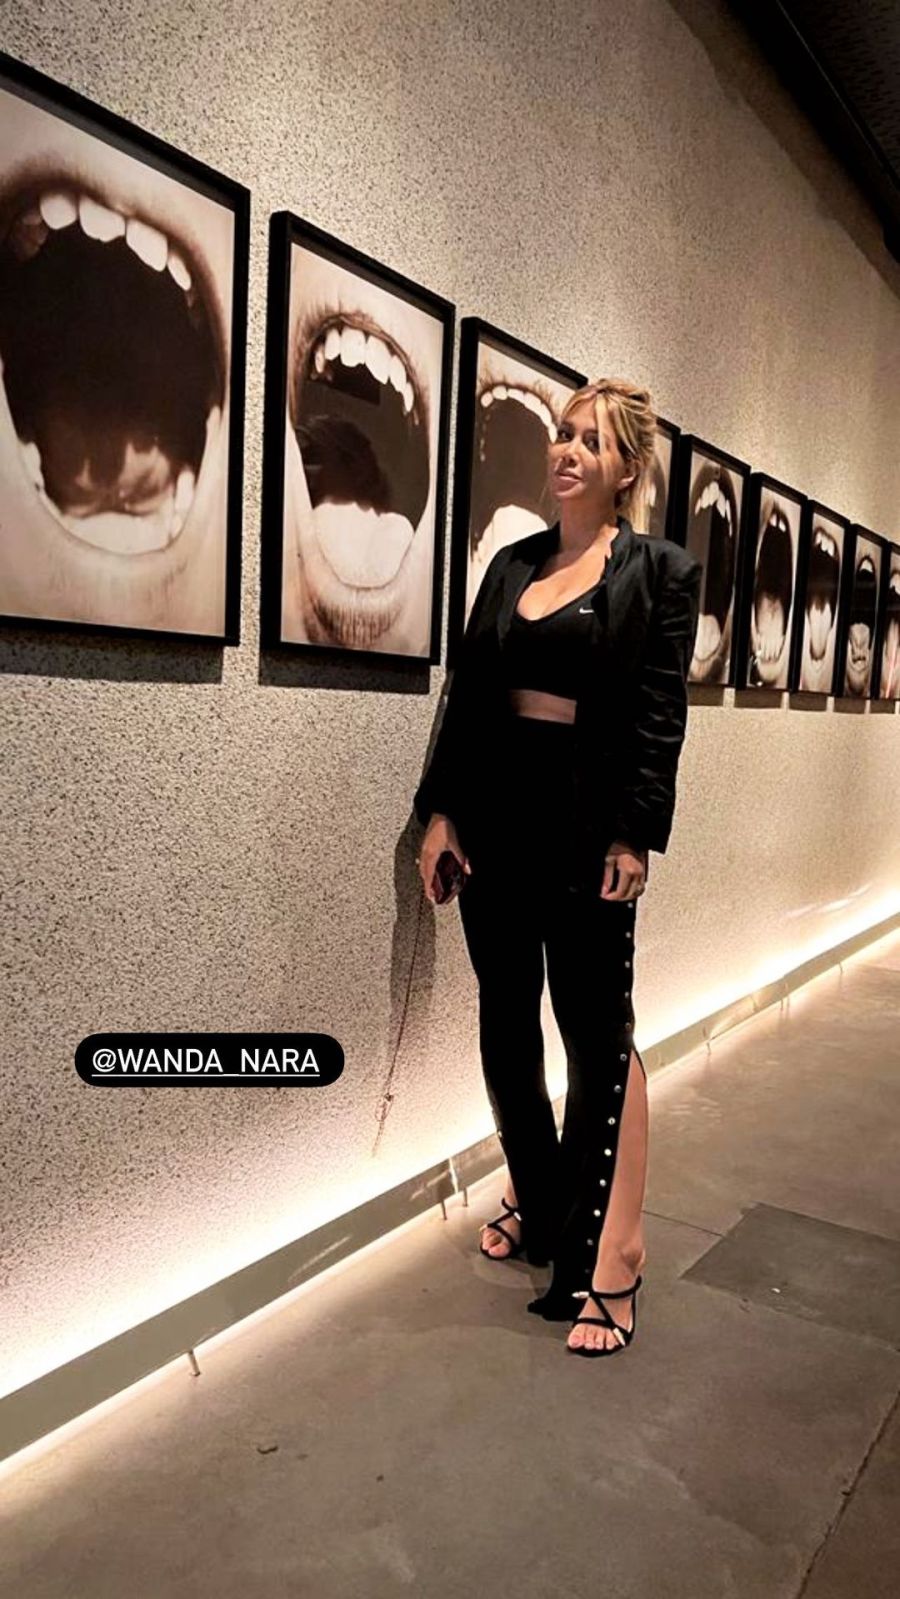 Wanda Nara y L-Gante cenaron juntos en un reconocido restaurante: las imágenes que lo comprueban